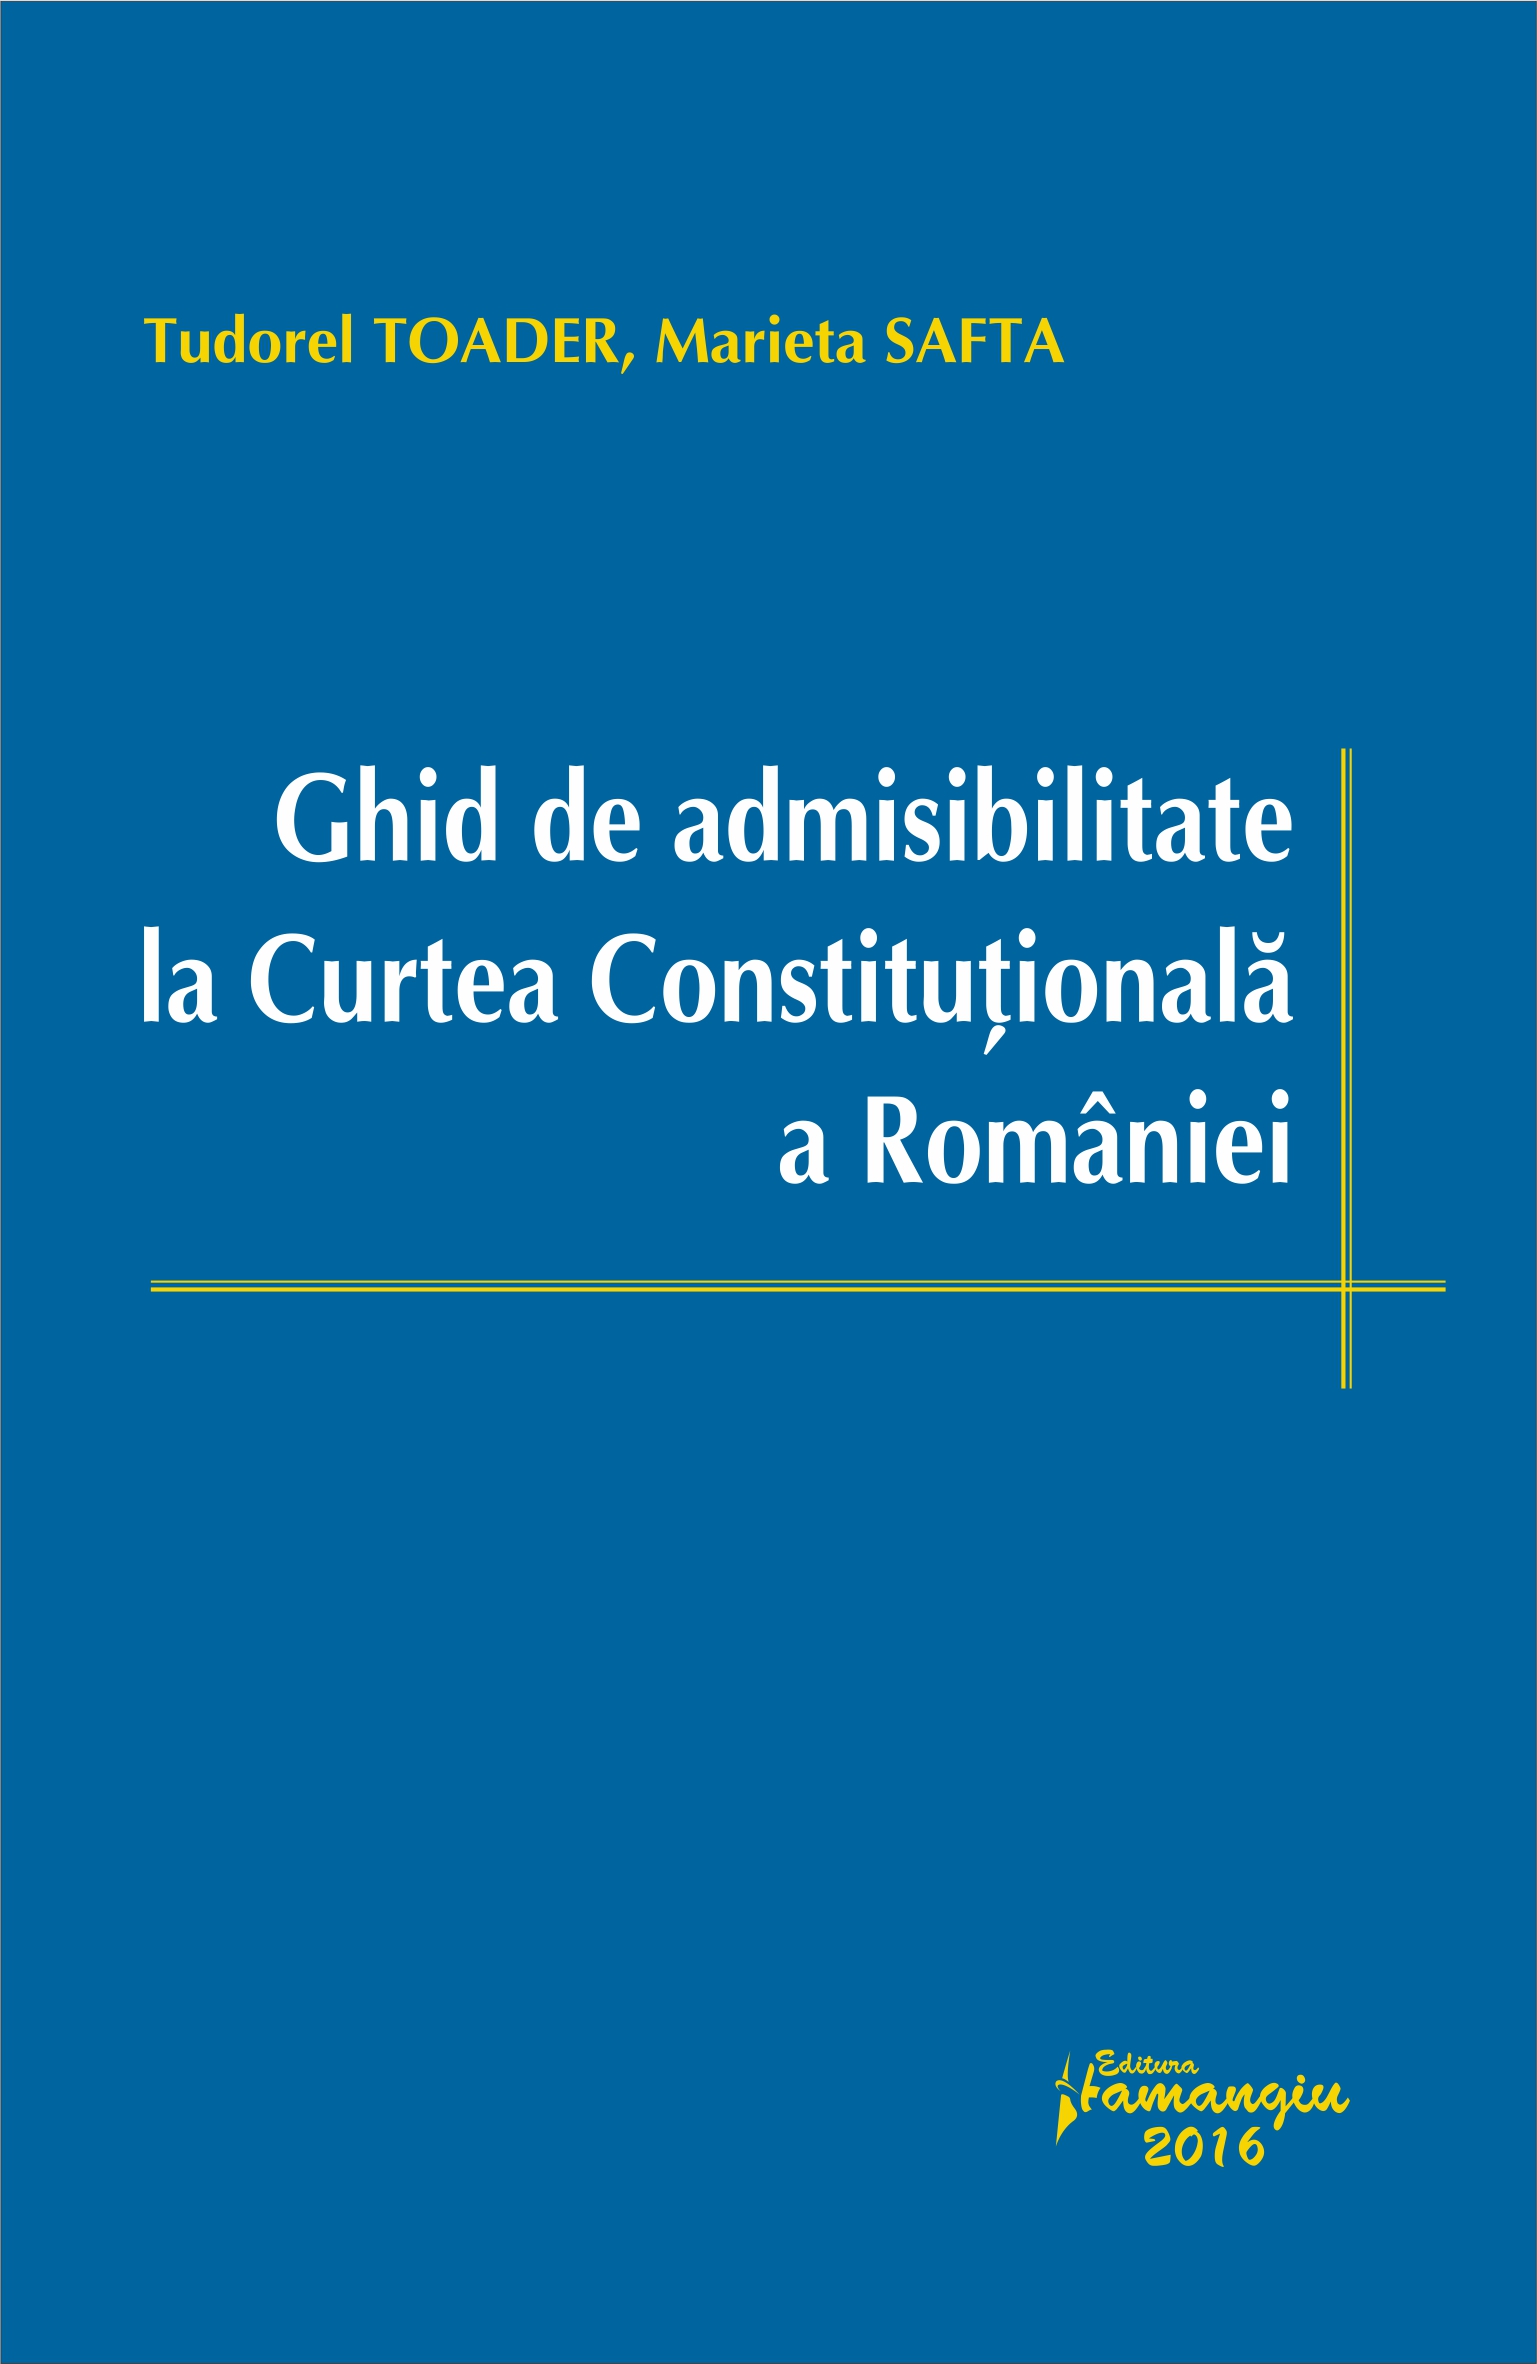 Ghid de admisibilitate la Curtea Constitutionala a Romaniei - Tudorel Toader, Marieta Safta